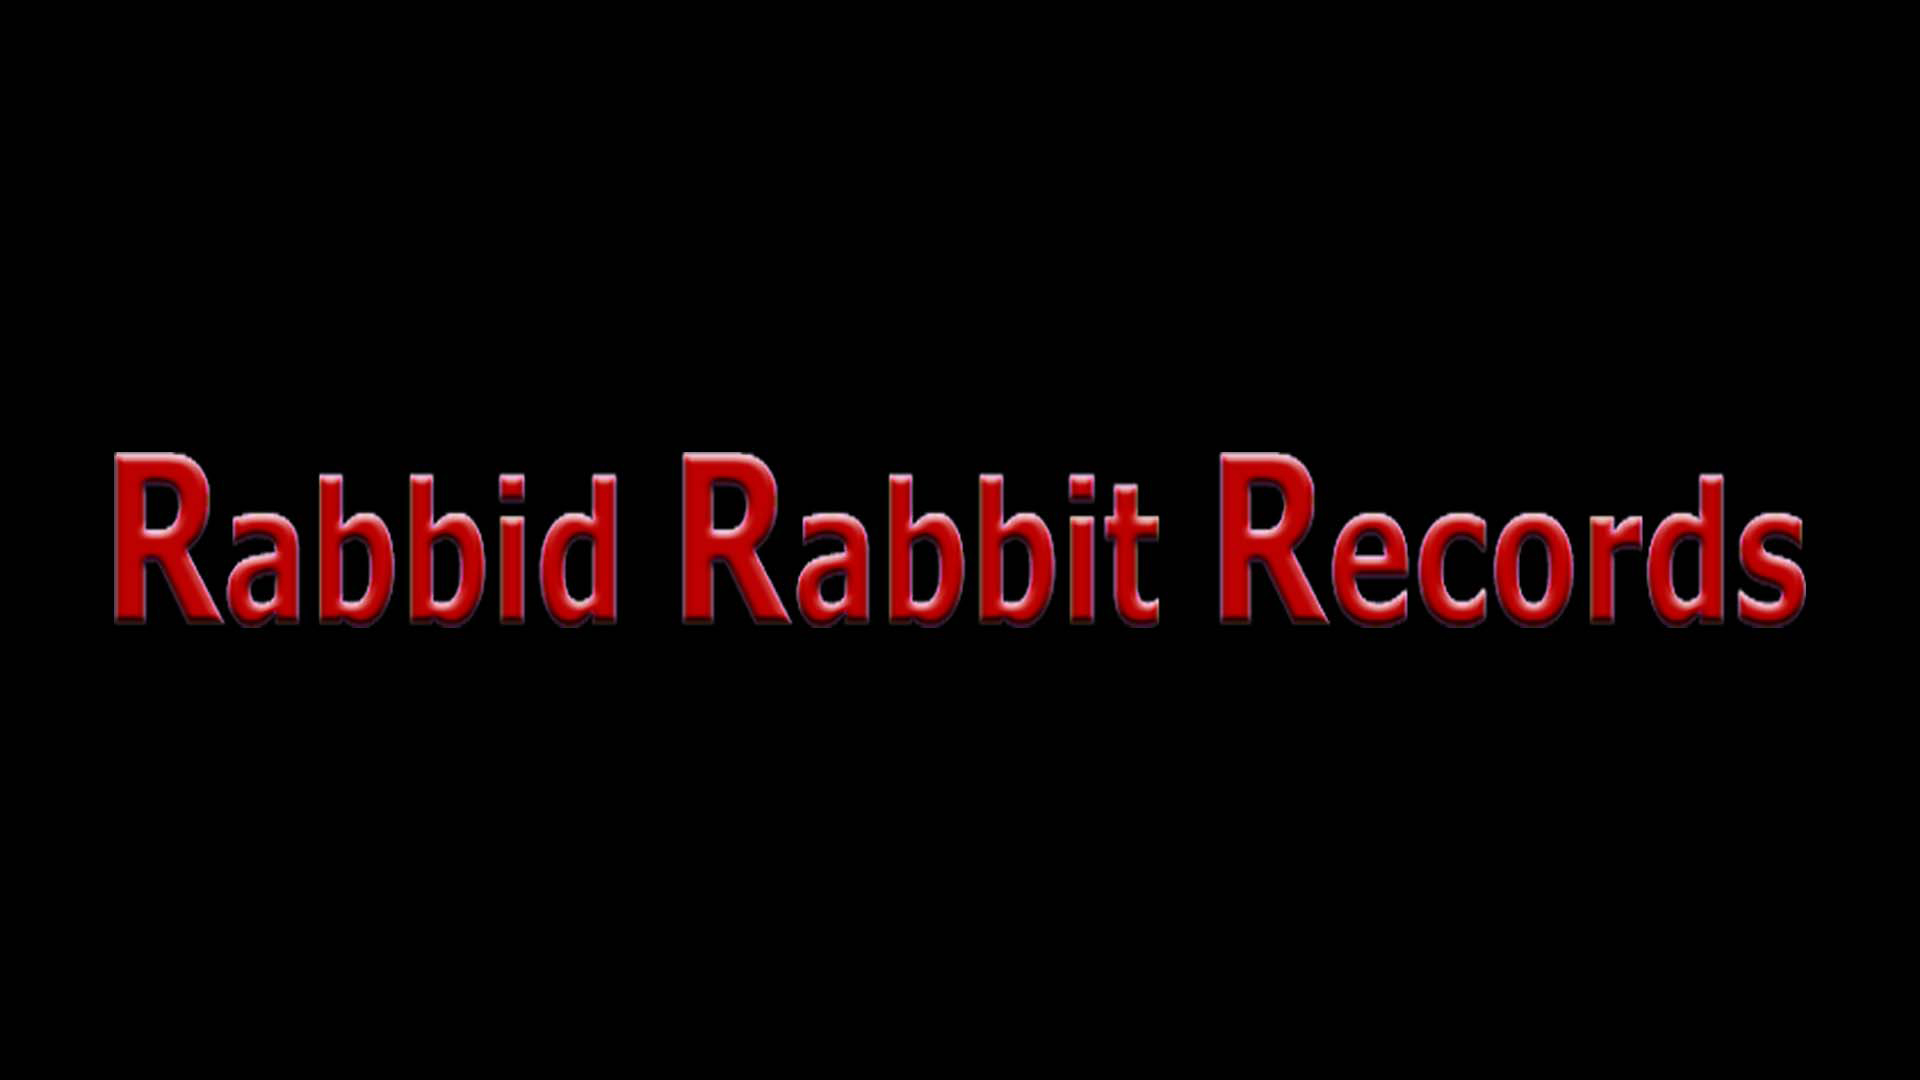 Rabbid Rabbit Records' Twelve-Year Appreciation Party